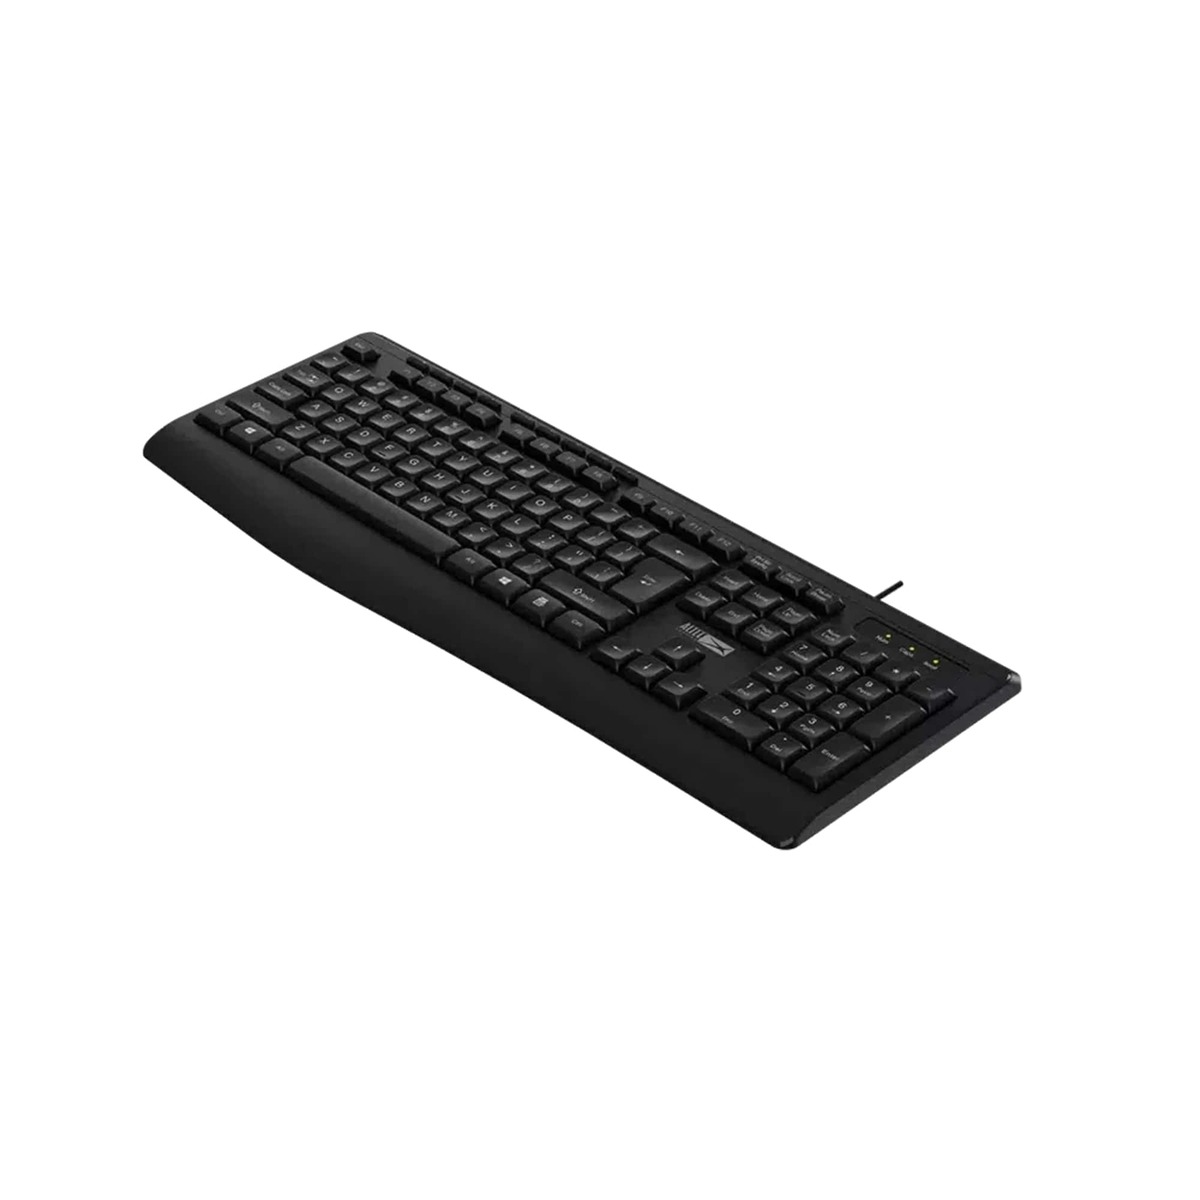 Altec Lansing Wired Keyboard ALBK6220 Black